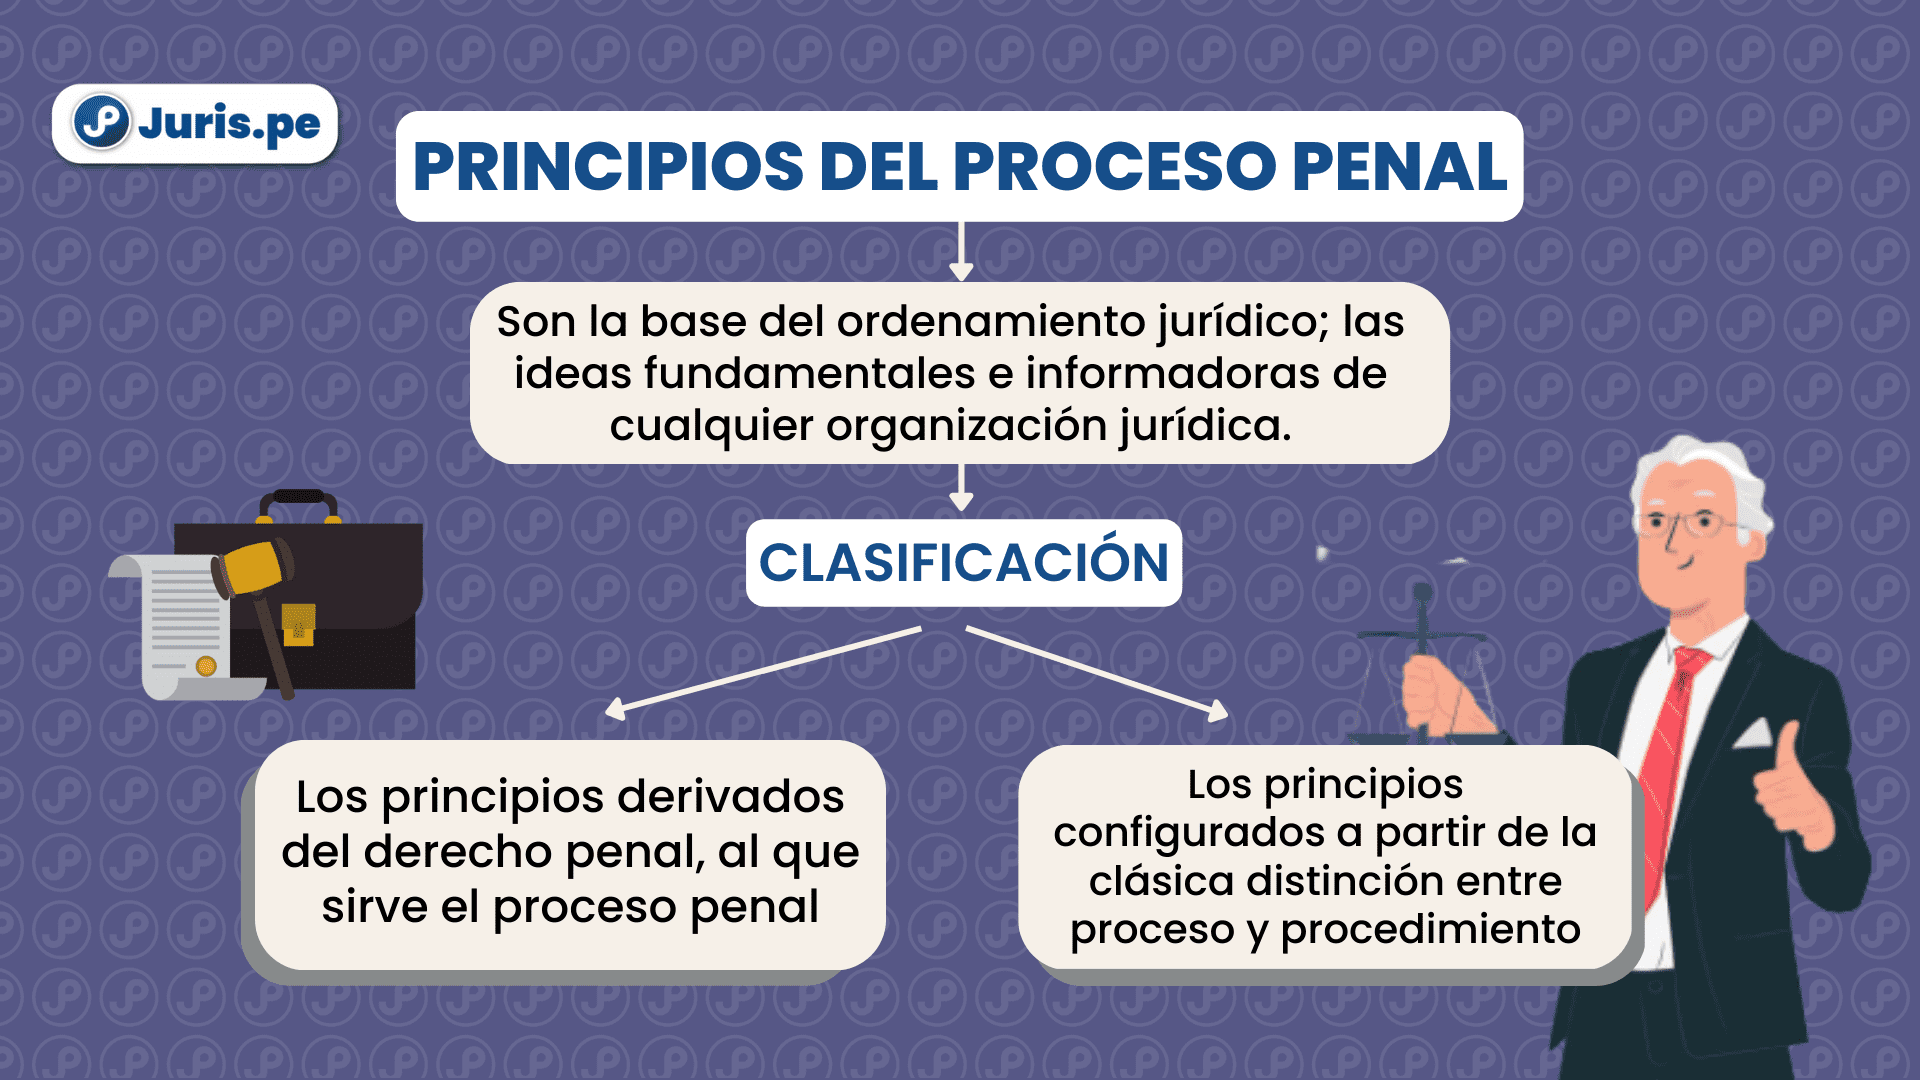 Principios del proceso penal. Bien explicado por César San Martín Castro